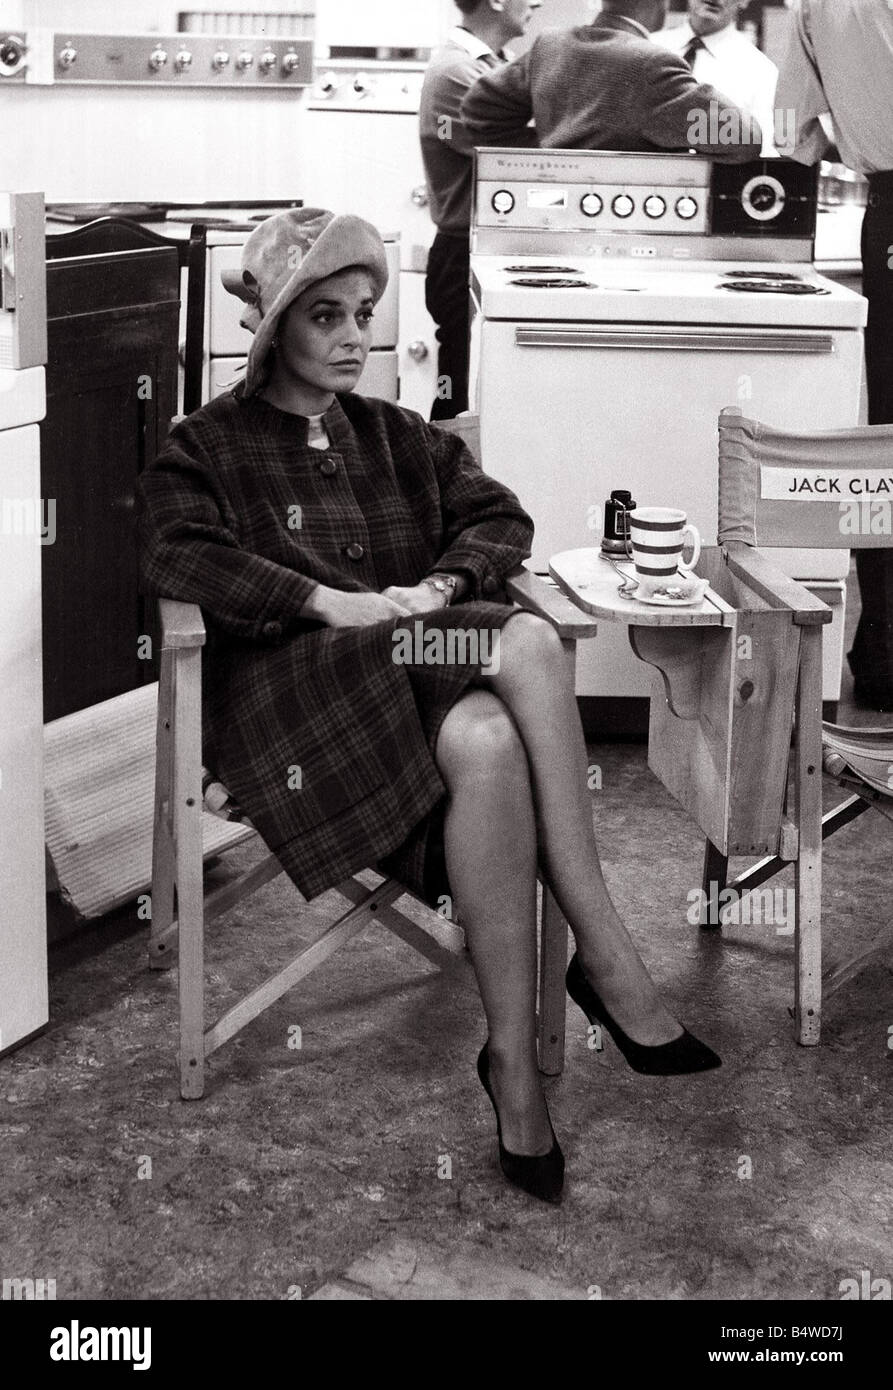 Anne Bancroft Schauspielerin bei dem berühmten Kaufhaus Harrods in Knightsbridge London sitzt In der Elektroabteilung Herde Mirropix lafrssjun05 0806 Stockfoto